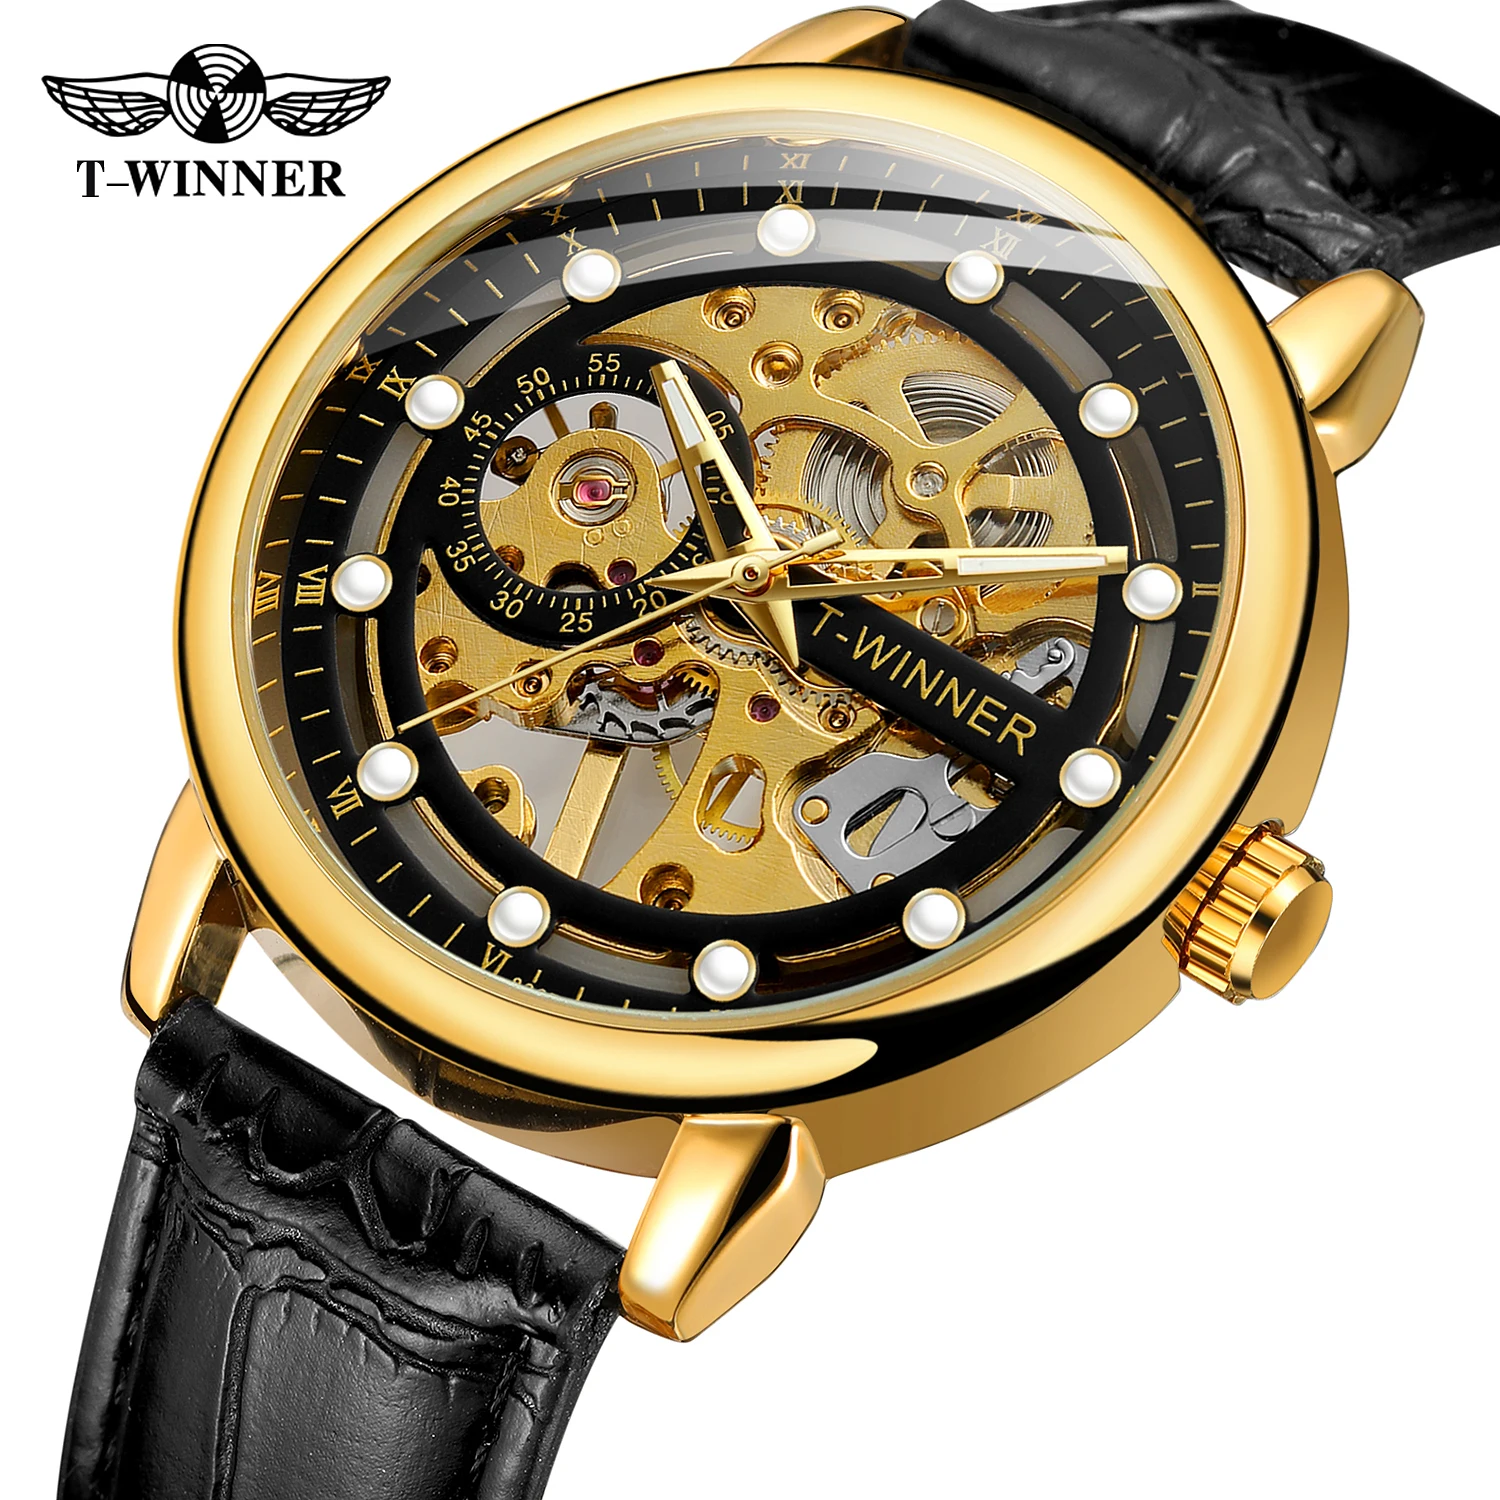 Ретро Прозрачные часы-скелет для мужчин, наручные часы с механическим ручным заводом, Светящиеся золотые часы, Кожаный ремешок Relogio, приятный подарок